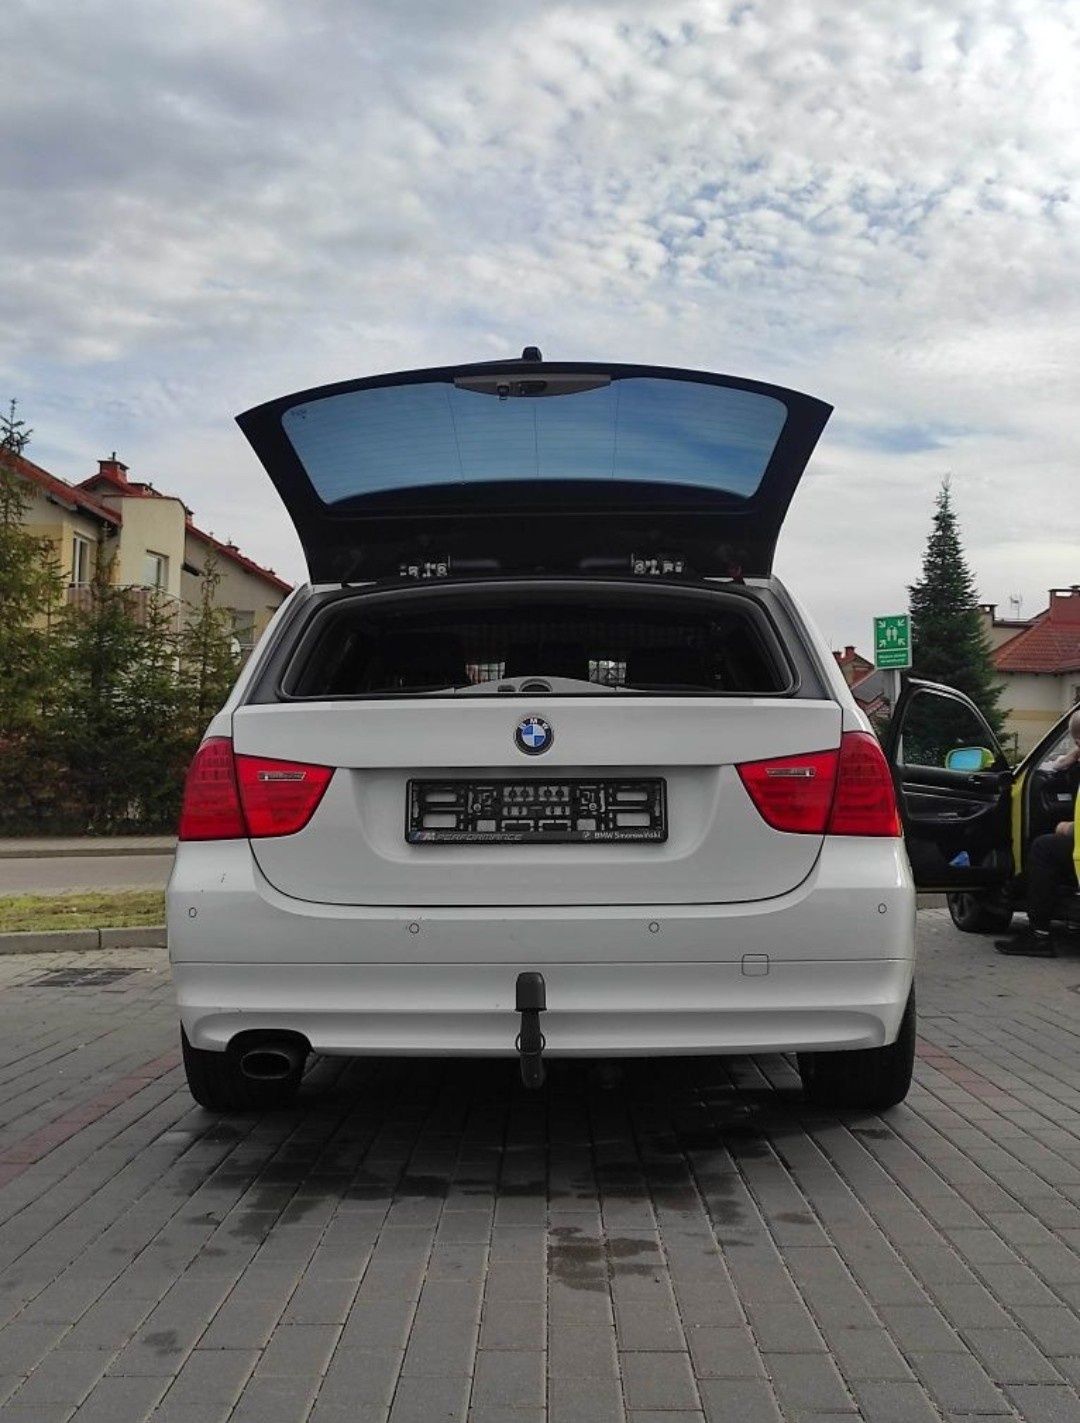 BMW 318d, 143km, 2010 rok, pollift